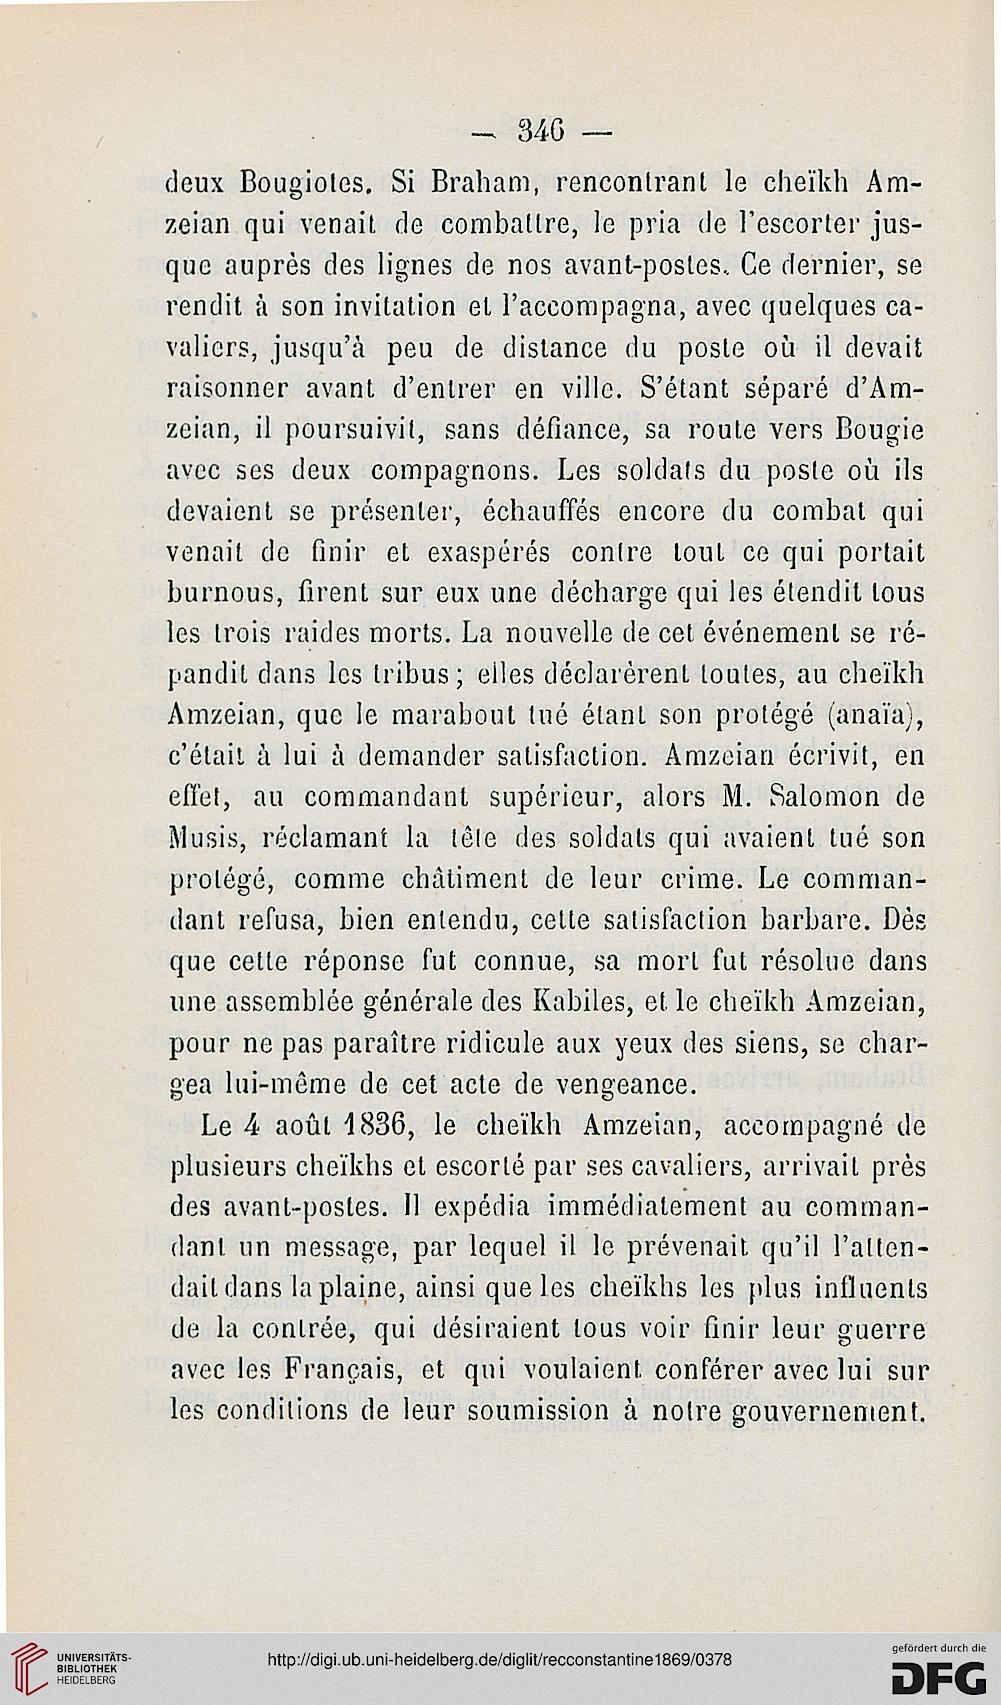 recueil des notices et memoires de la societe archeologique de la province de constantine ser 2 3 13 1869